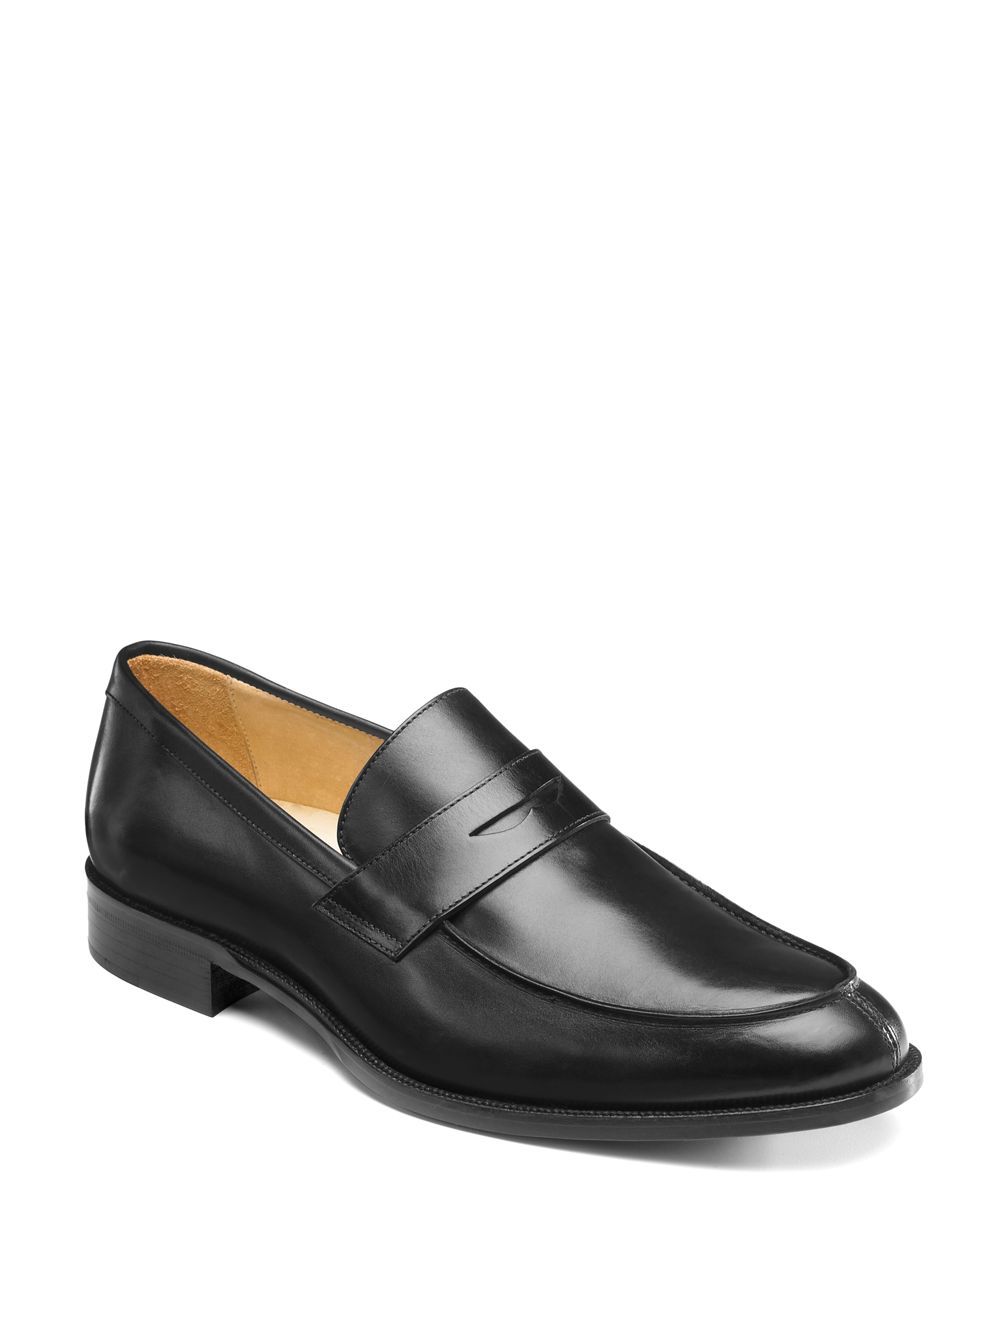 Saks Fifth Avenue Split-Toe Penny Loafers in Black for Men - Lyst